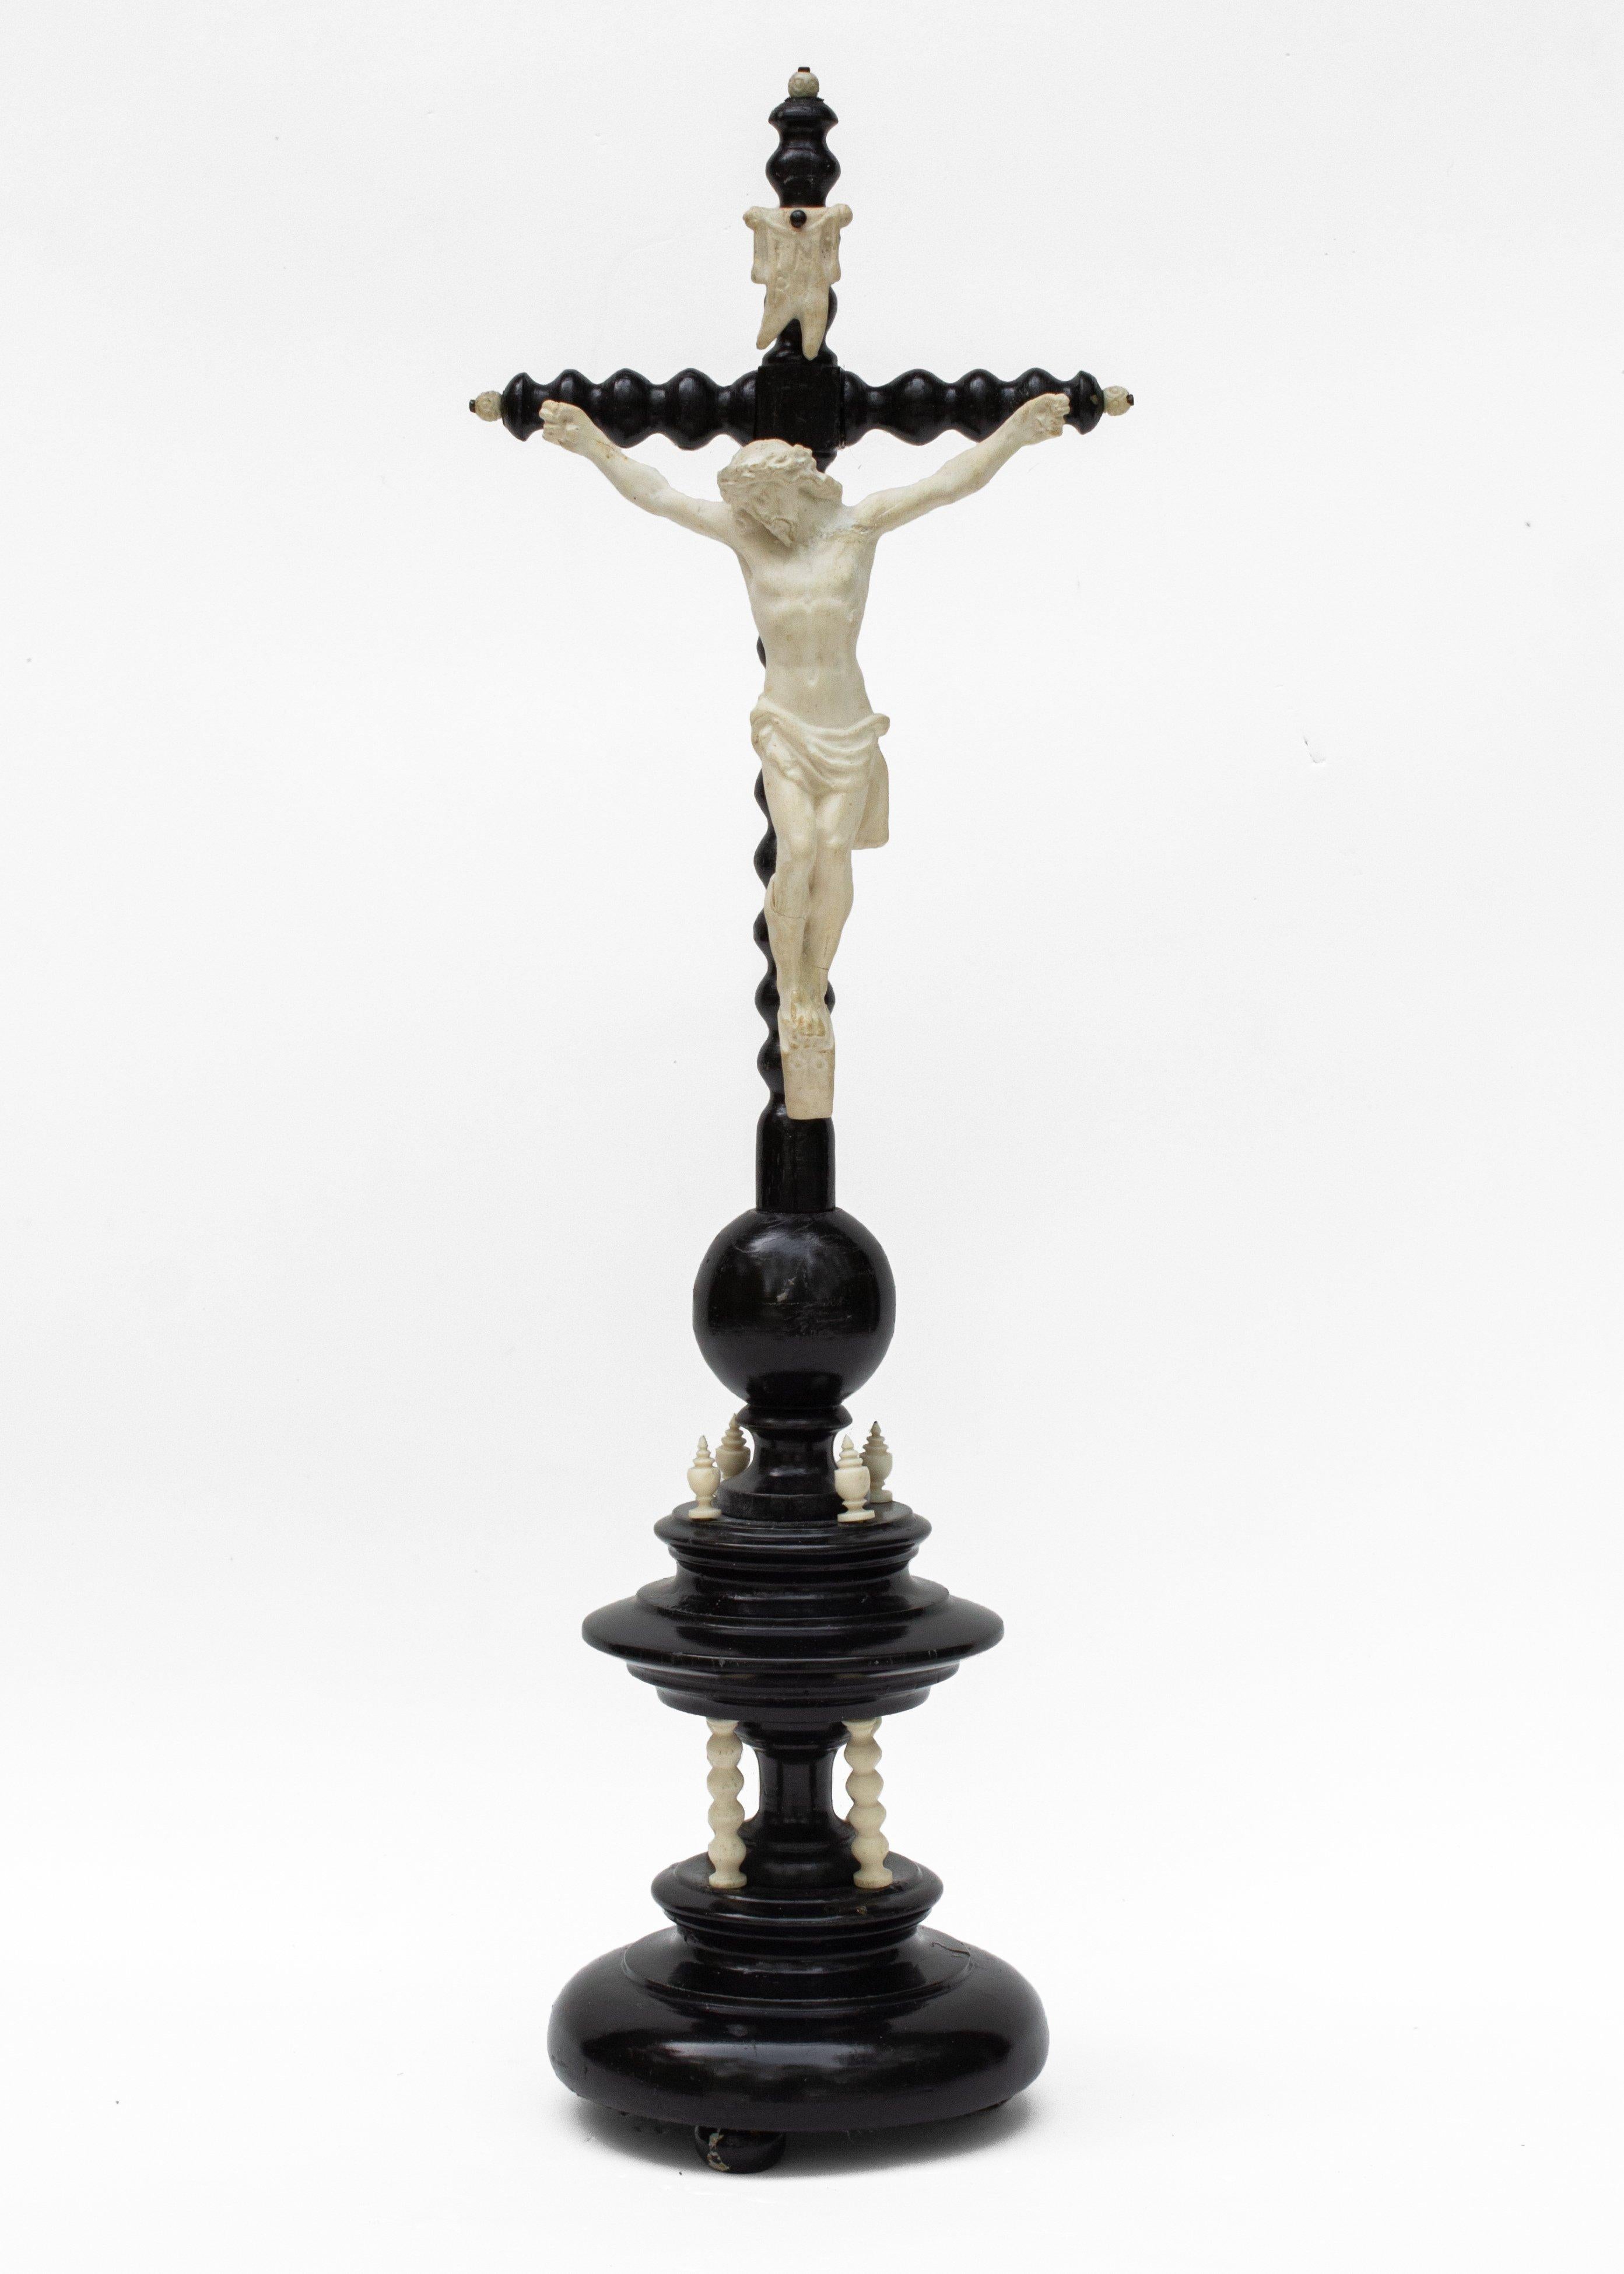 Crucifix en bois tourné français du 19e siècle avec une figure du Christ en biscuit de porcelaine et des détails de couleur crème coordonnés. Les épis de faîtage en bois sculpté de couleur crème sur la base à deux niveaux de la croix contrastent